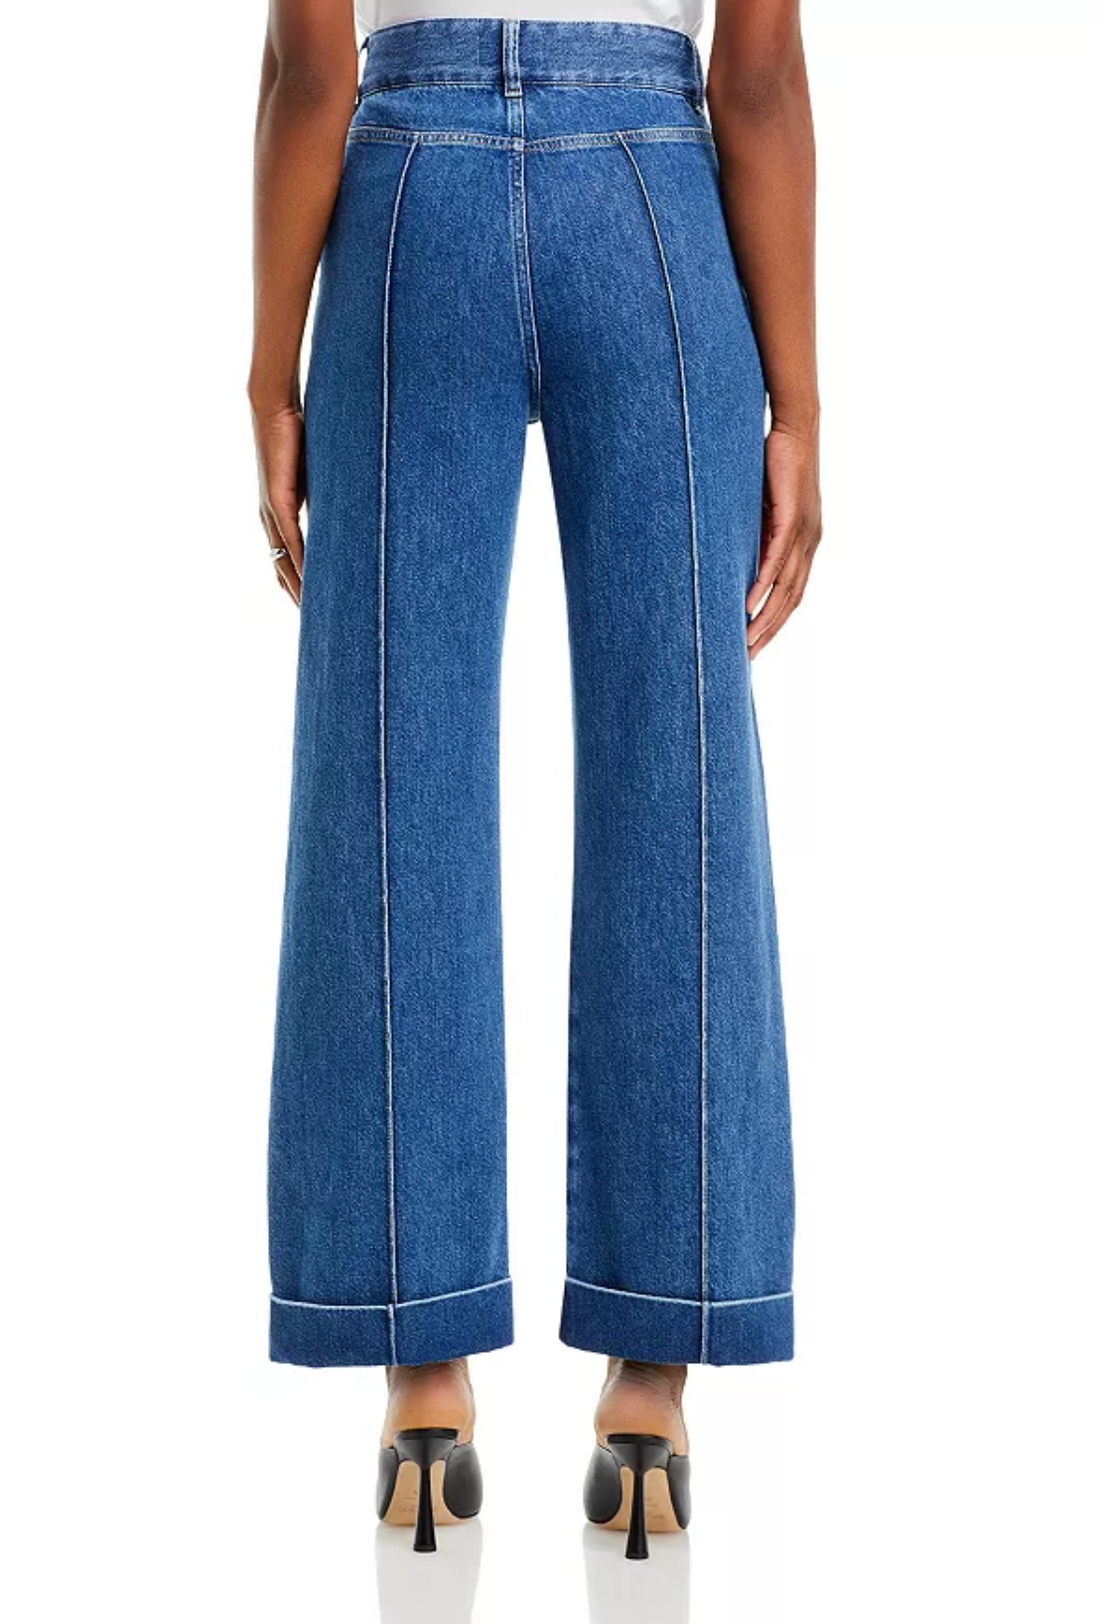 70's Cuffed Crop Jean